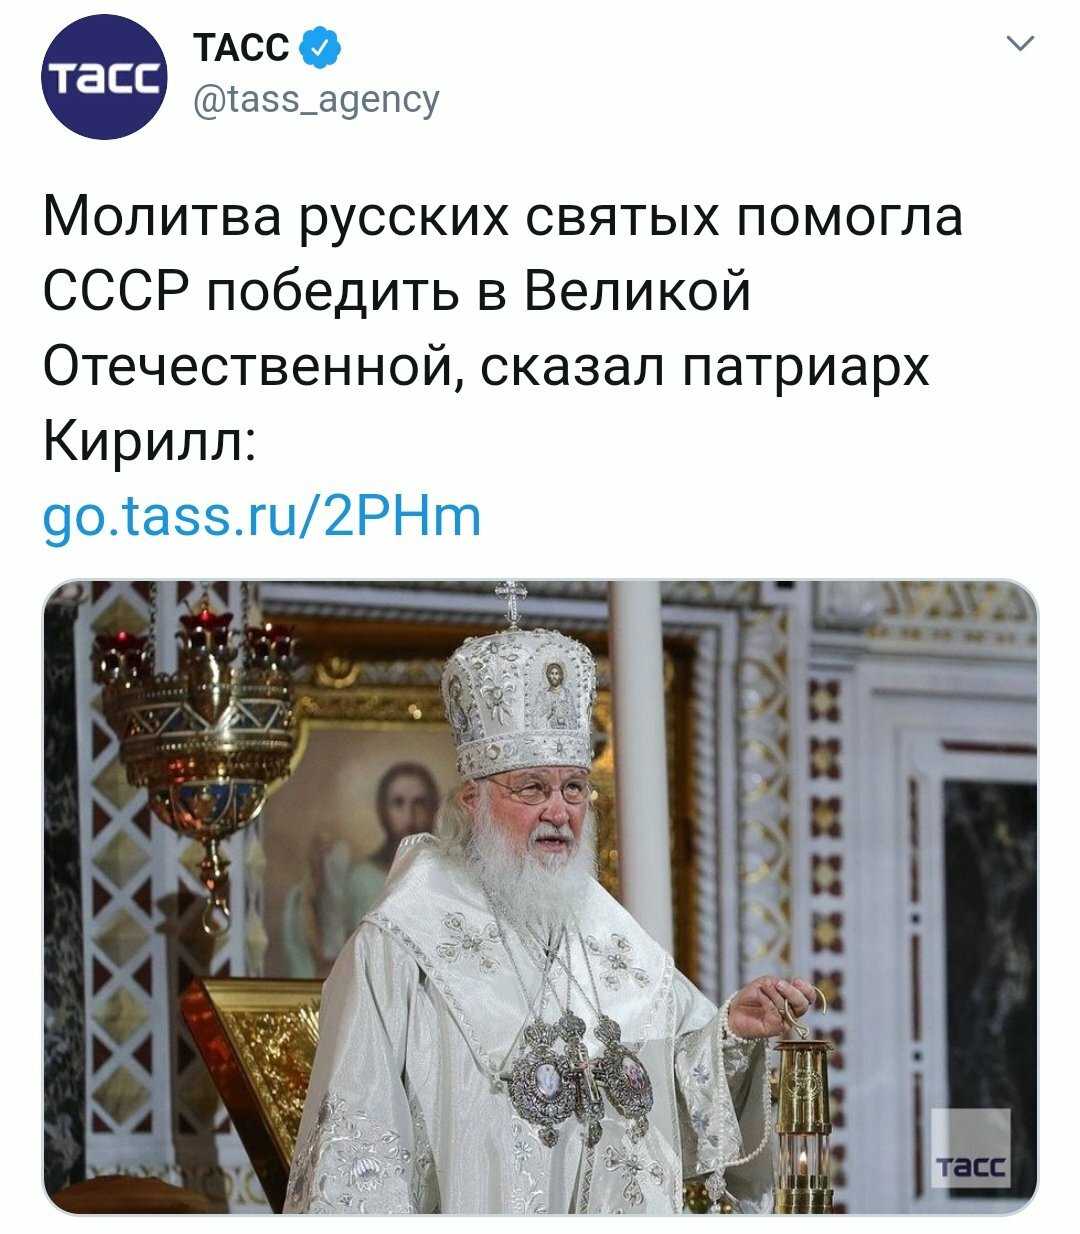 Rinat Dashkin в Твиттере: "За Николая2 и за Российскую Импер